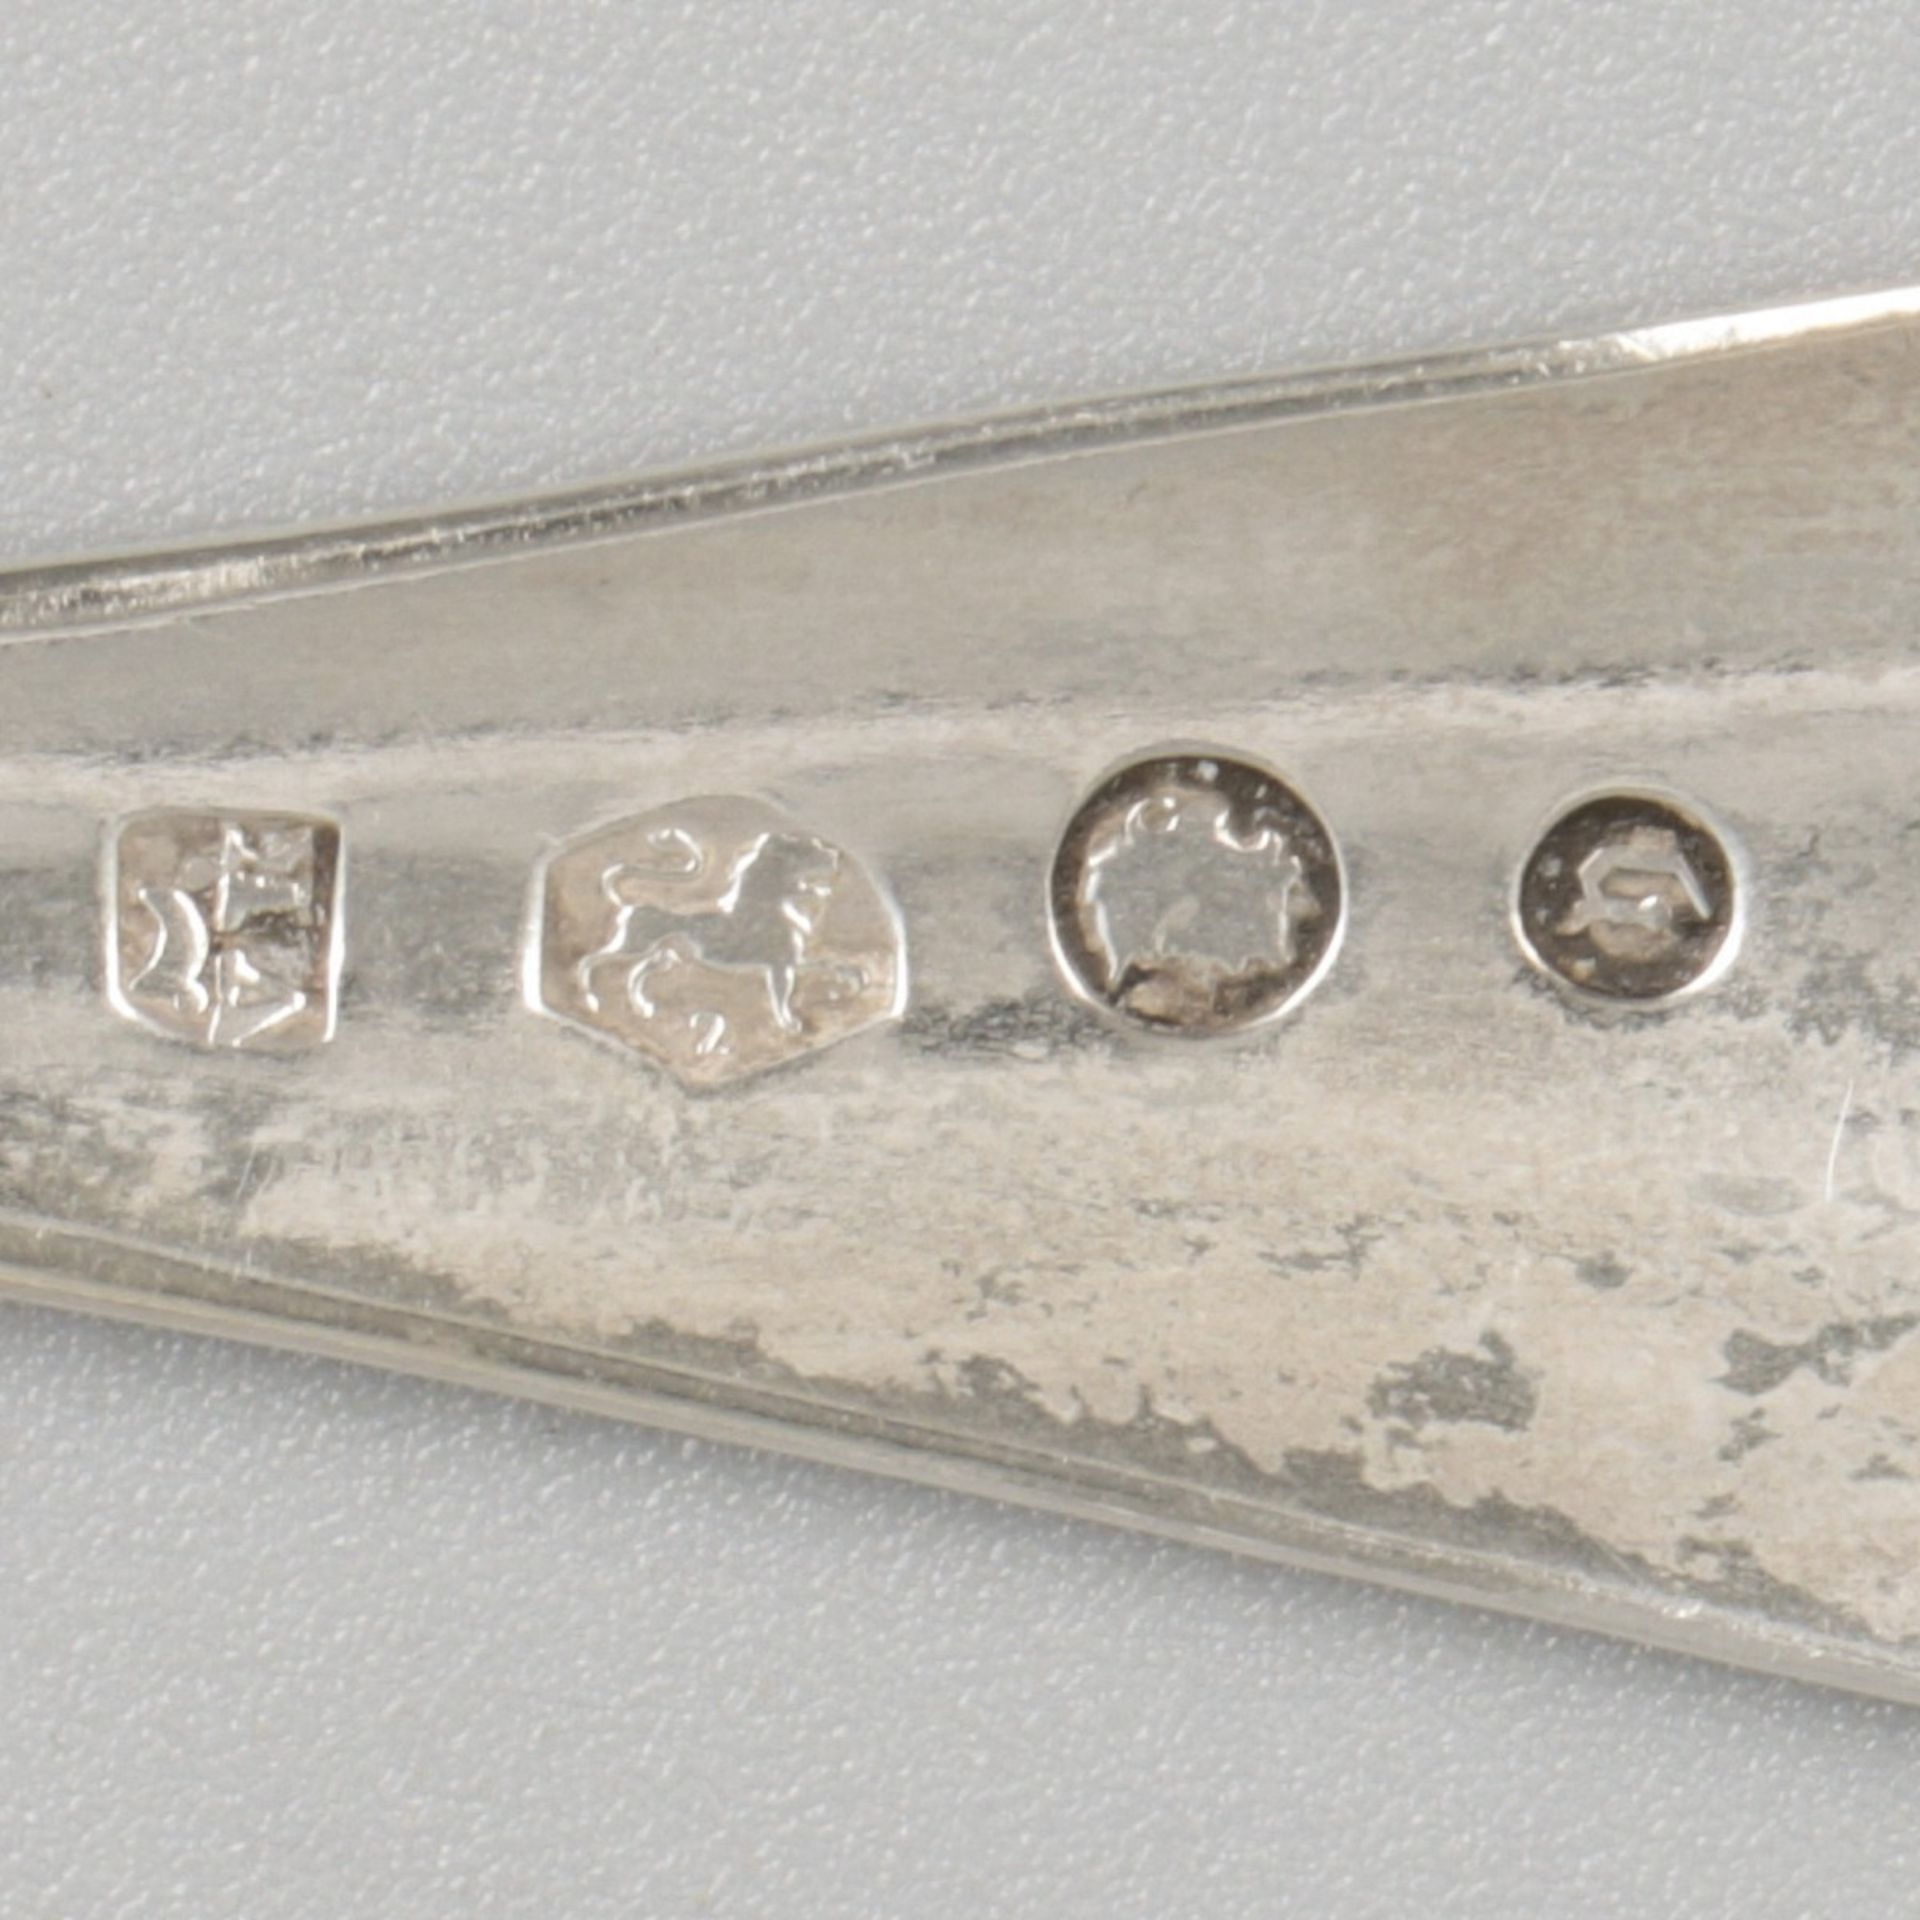 5-piece lot sugar spoons silver. - Image 6 of 6